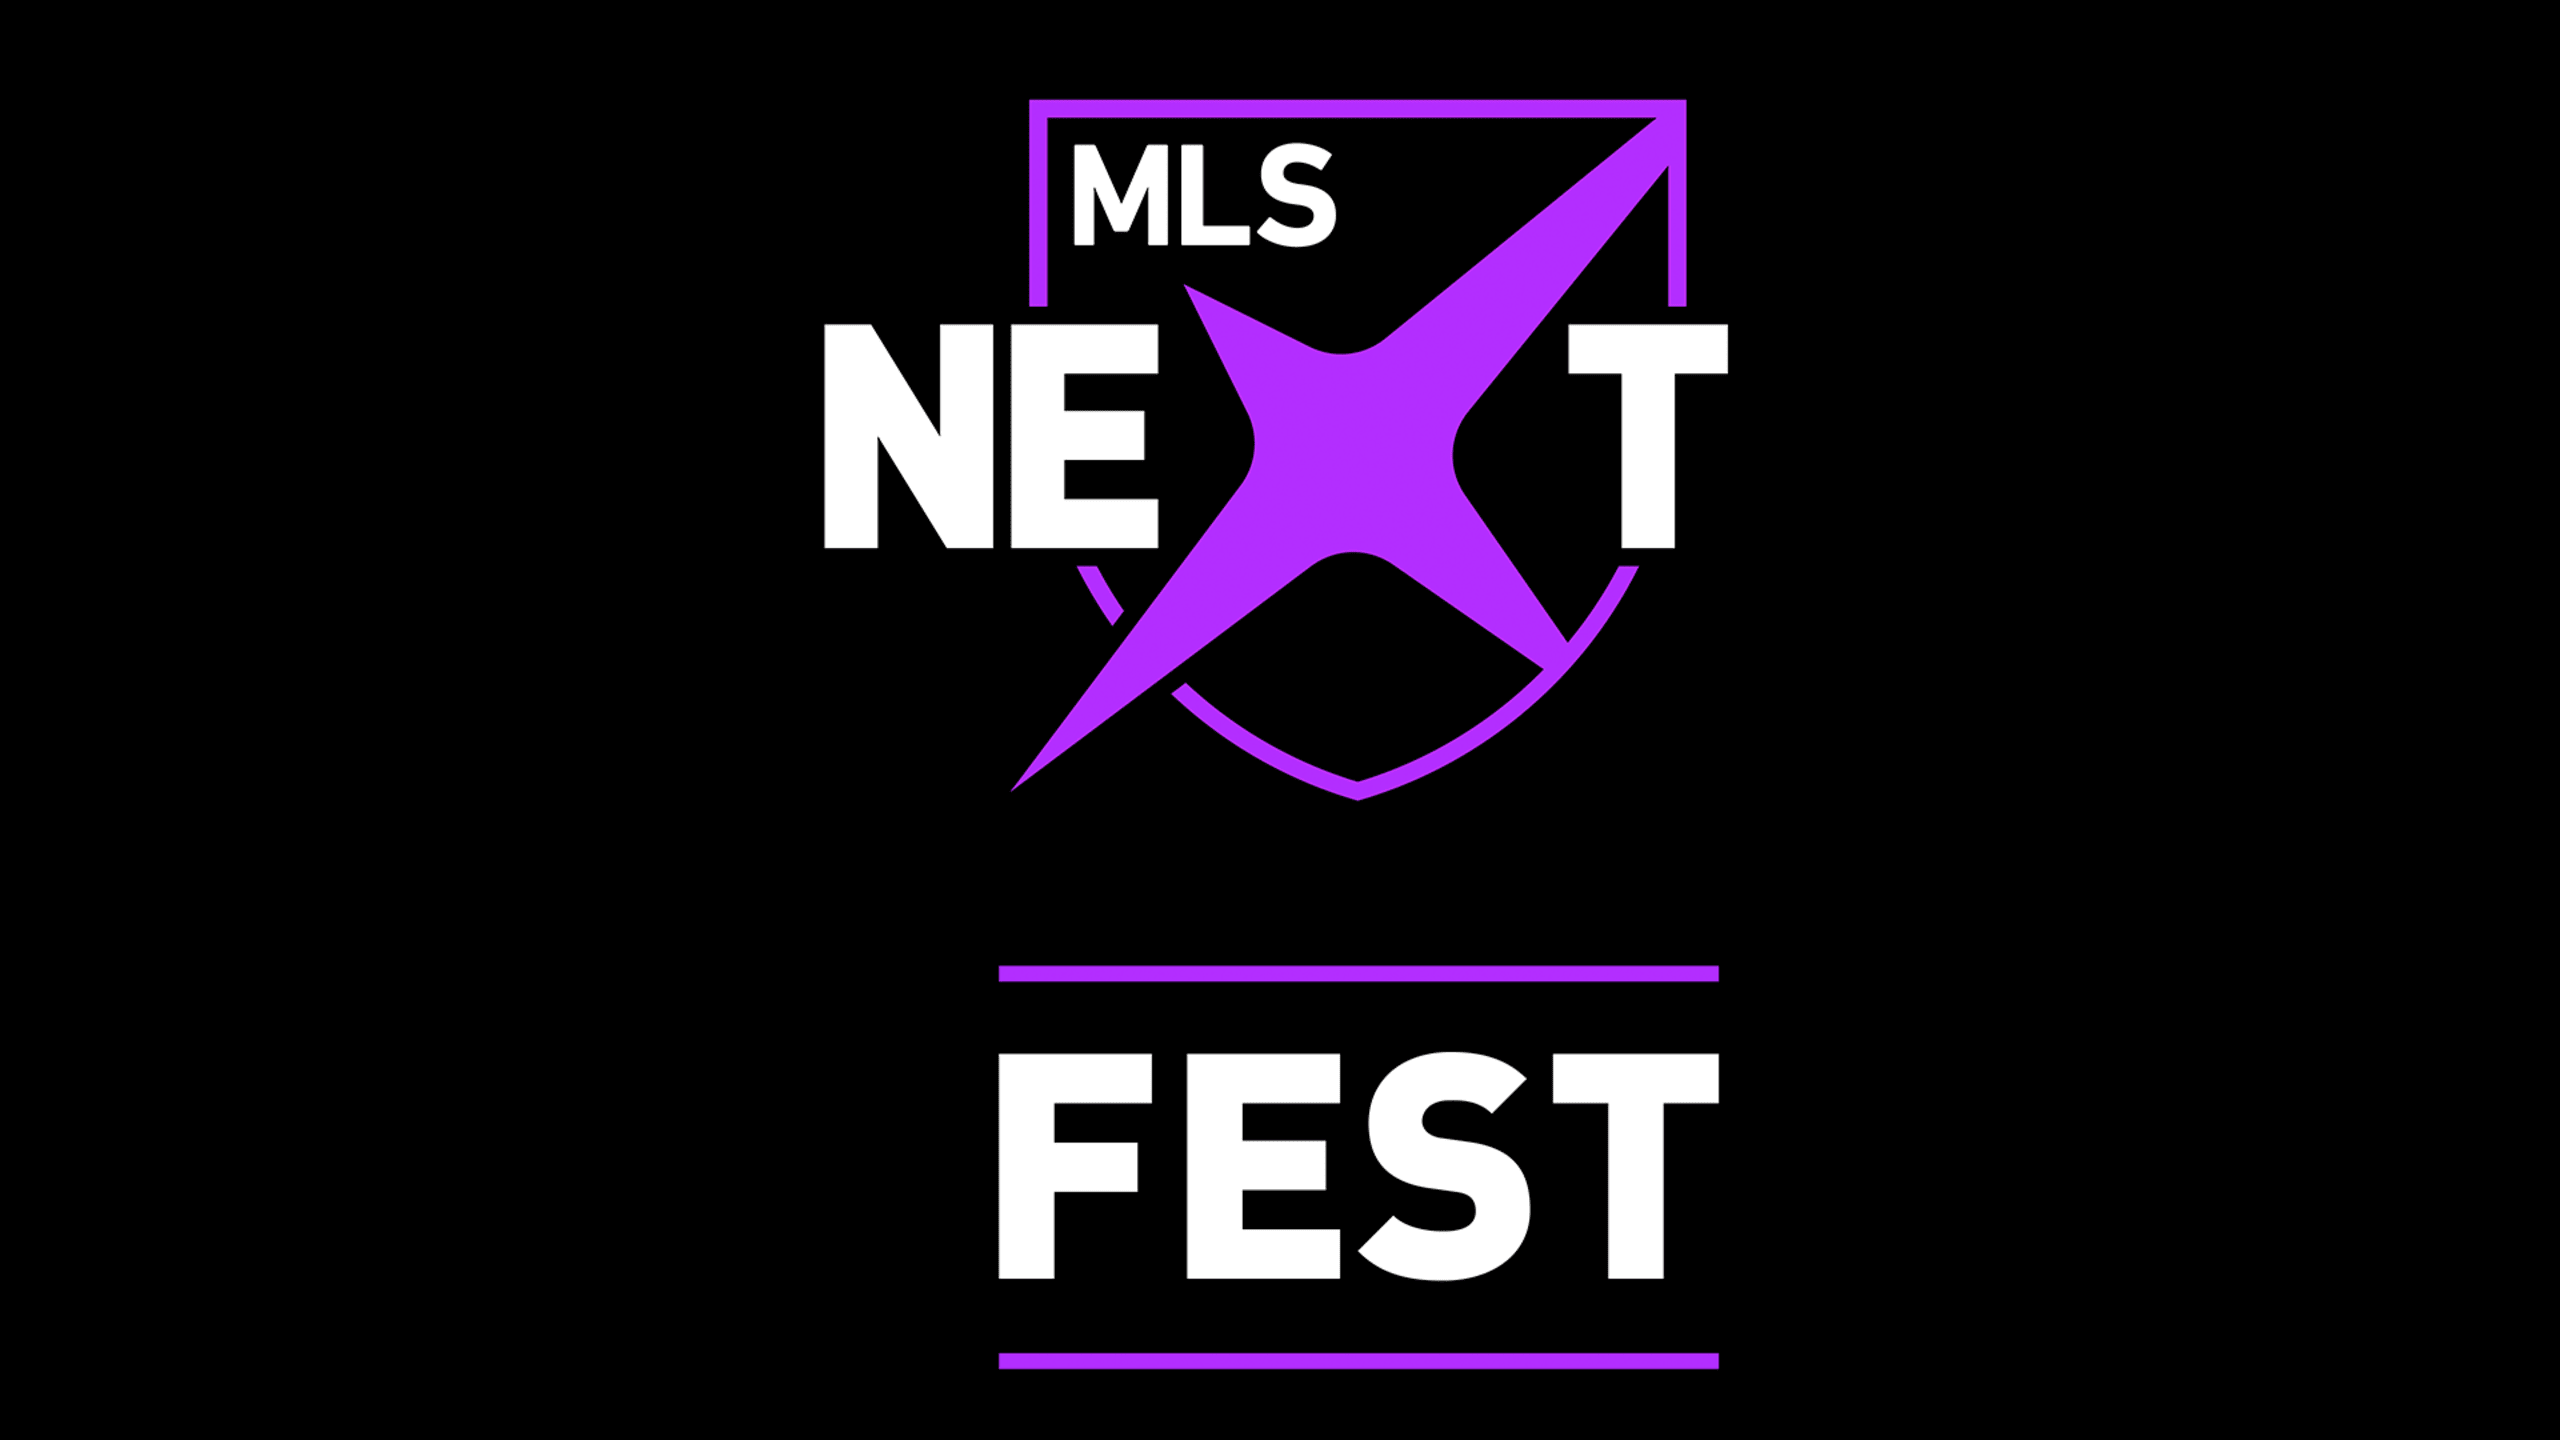 MLS NEXT announces event in California